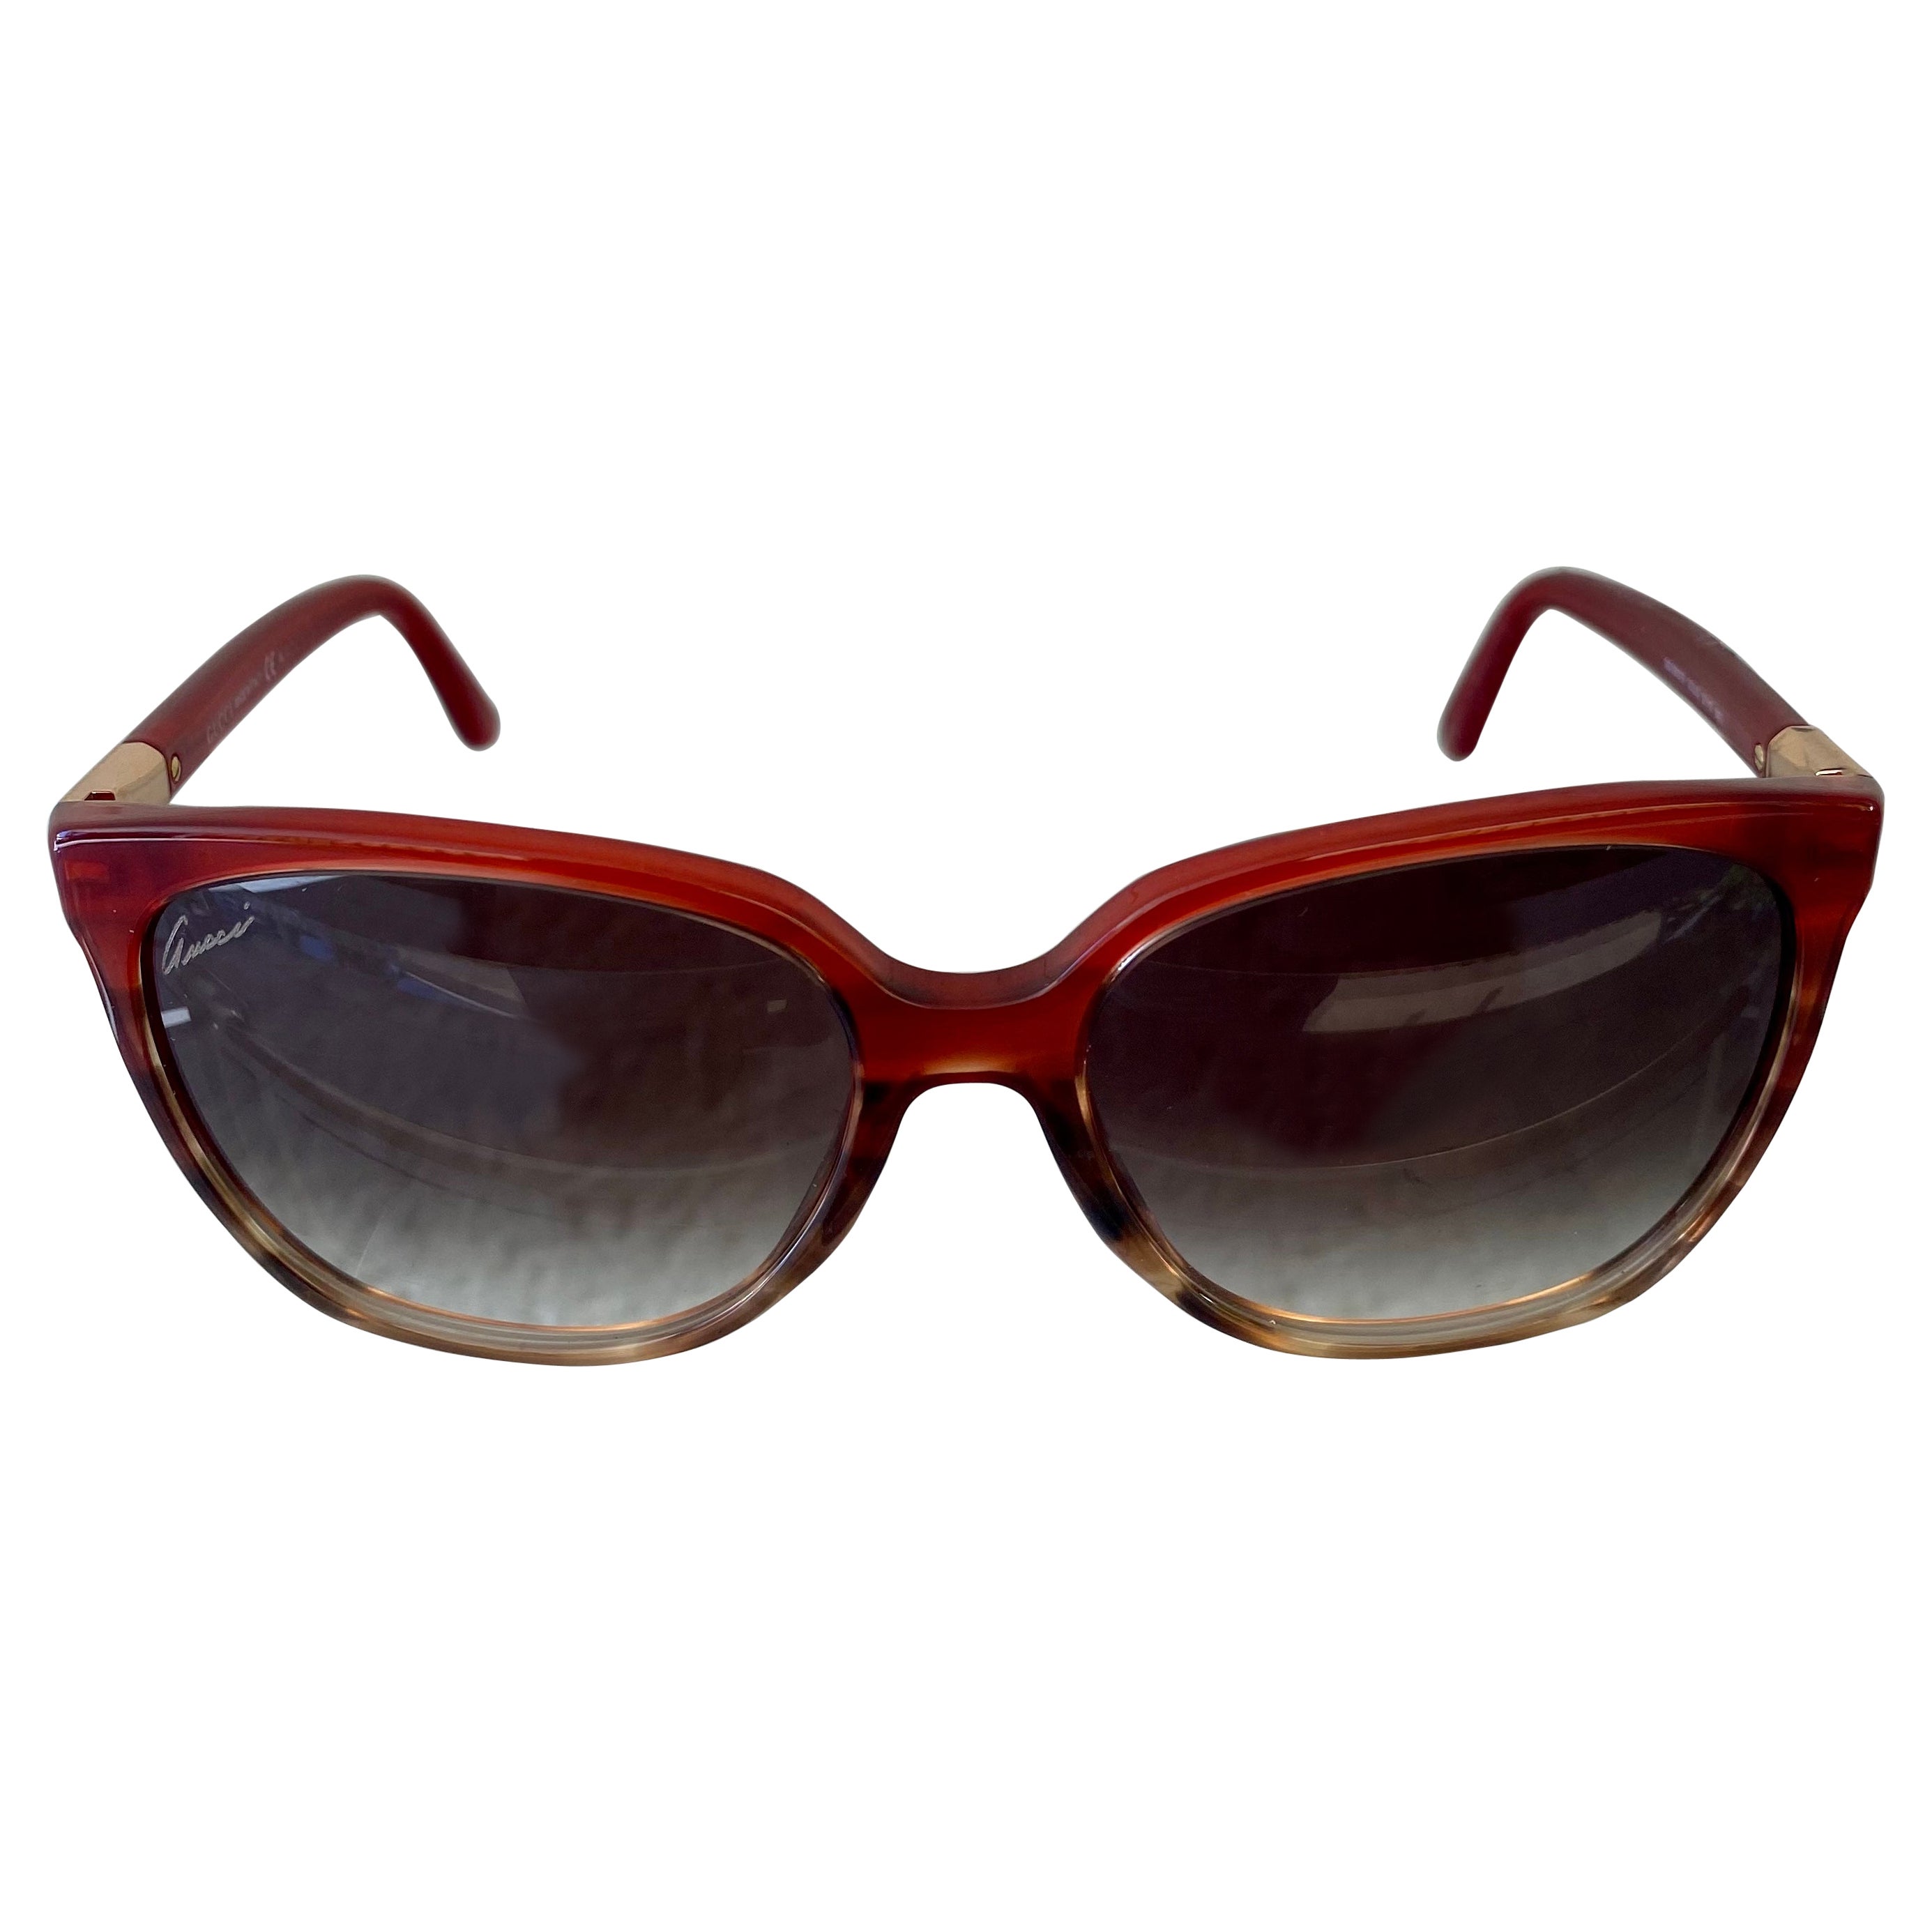 Gucci Tortoise Retro Style Sunglasses 